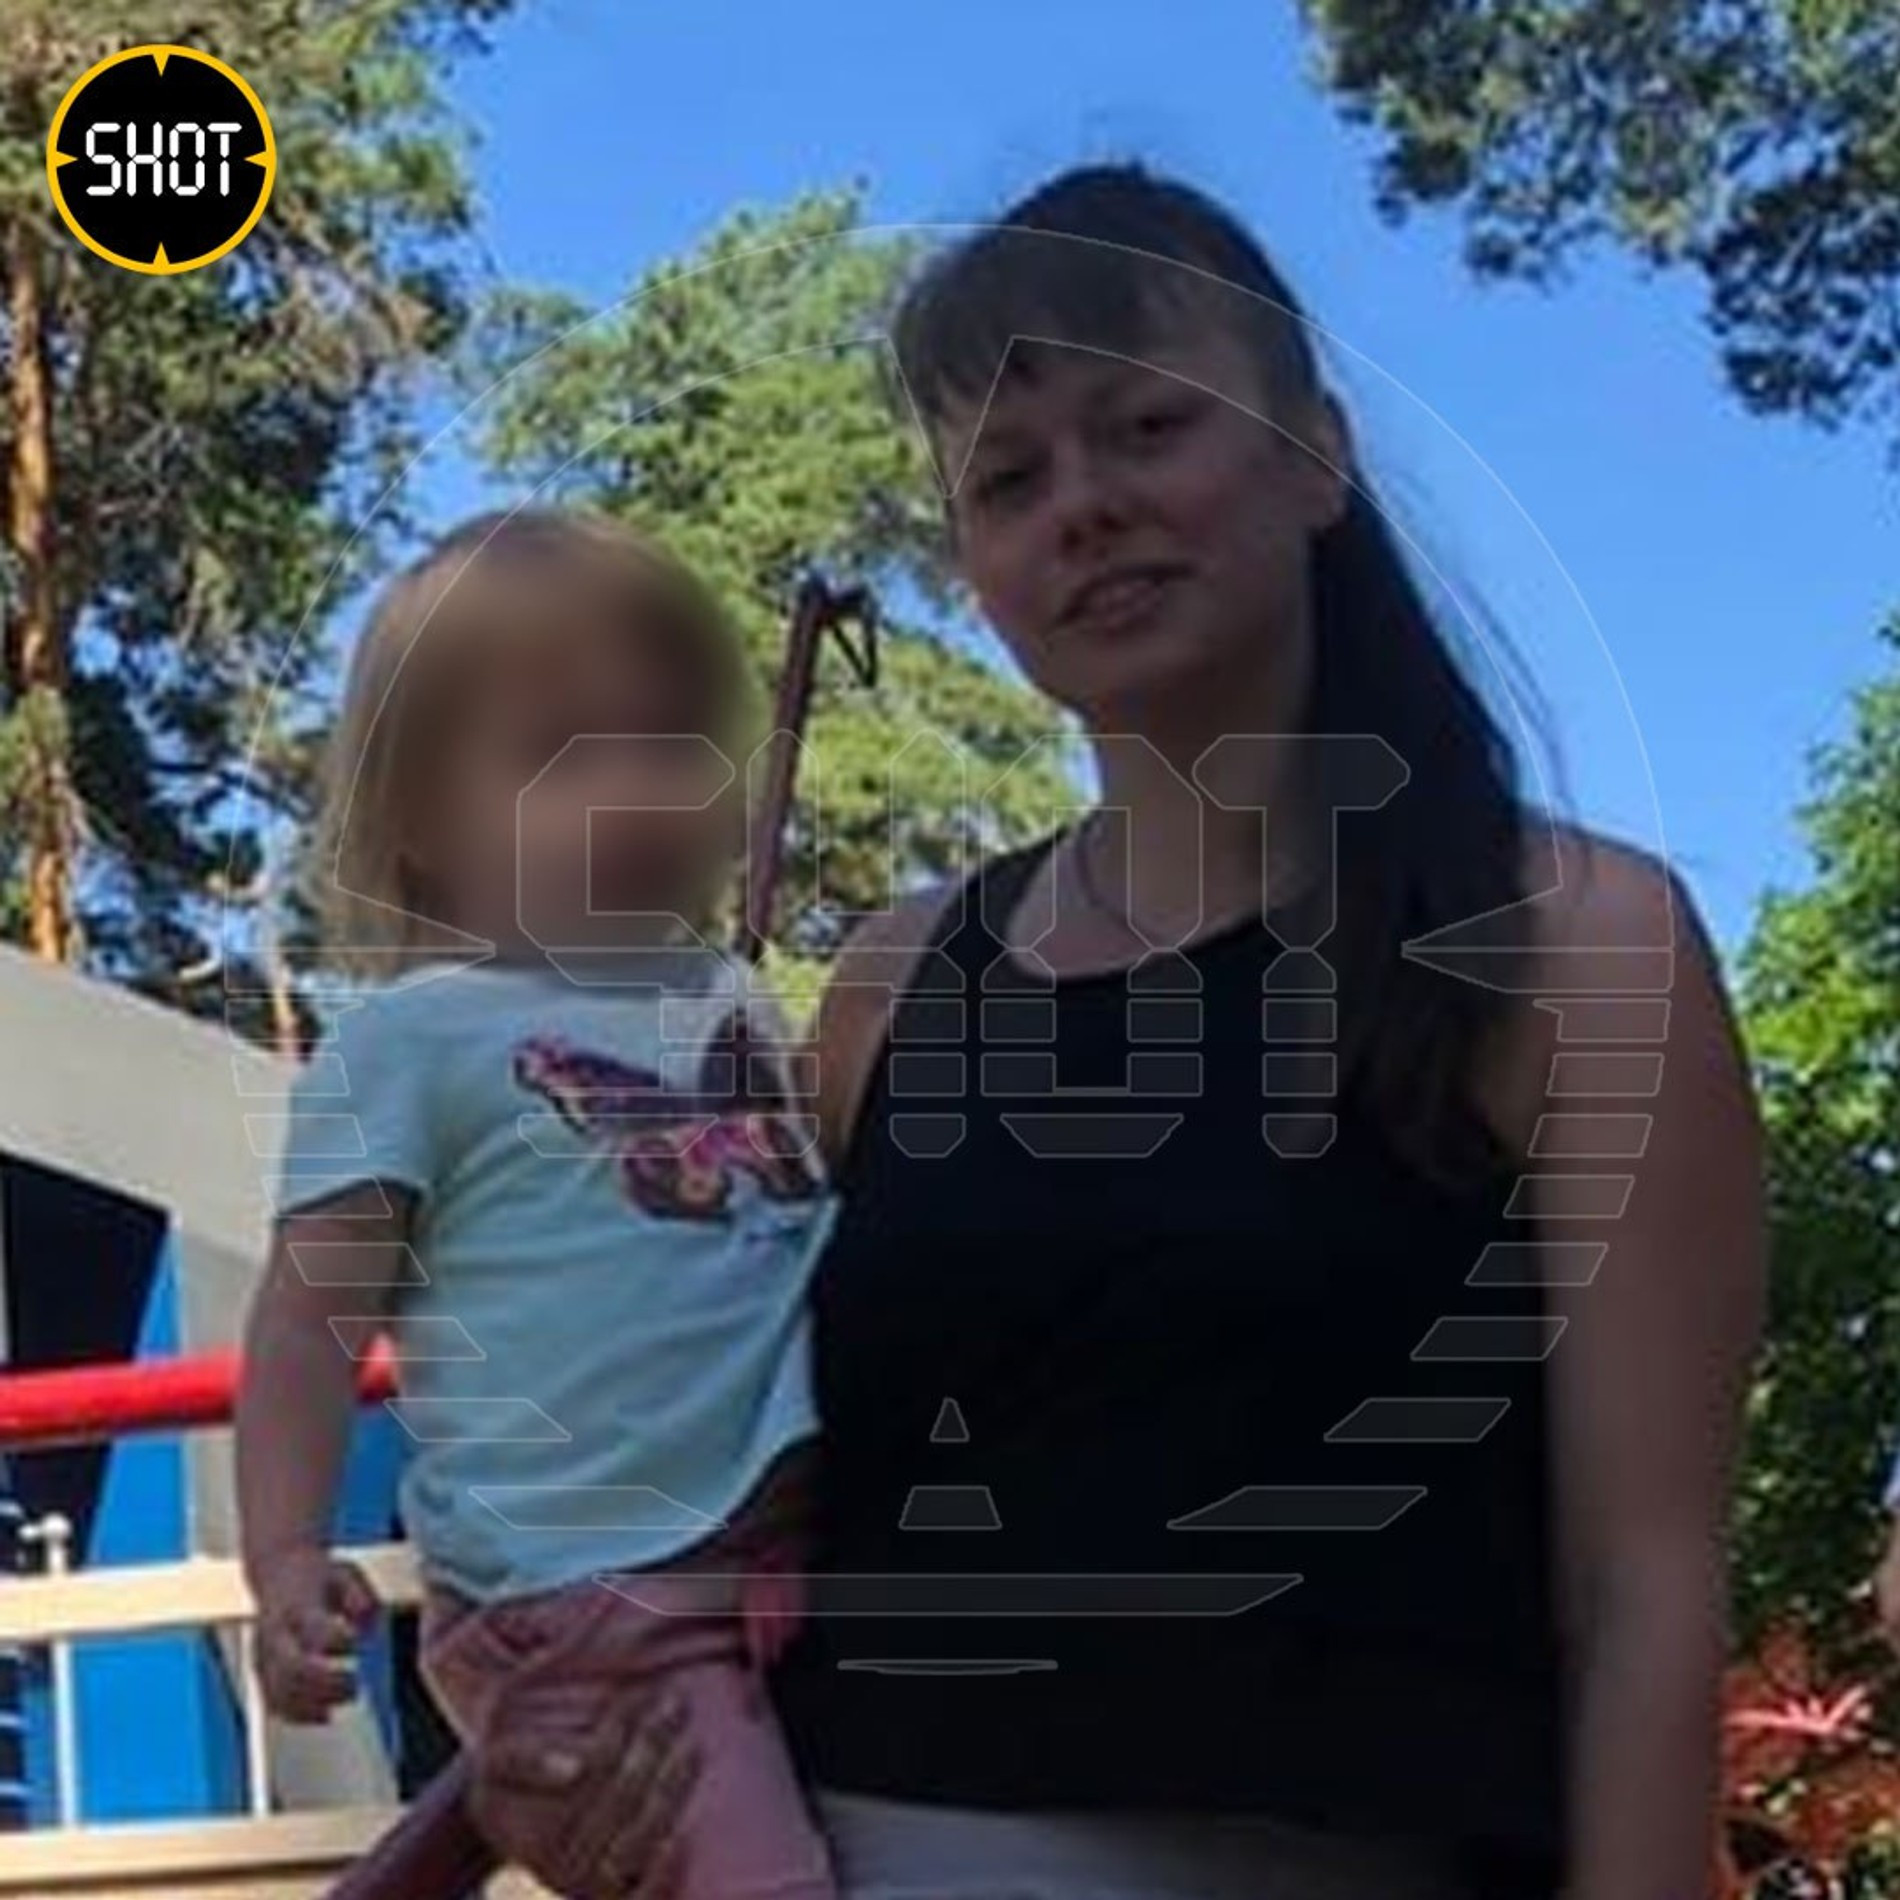 Влада Киселева с дочерью Аллой 
Фото: Telegram-канал Shot 